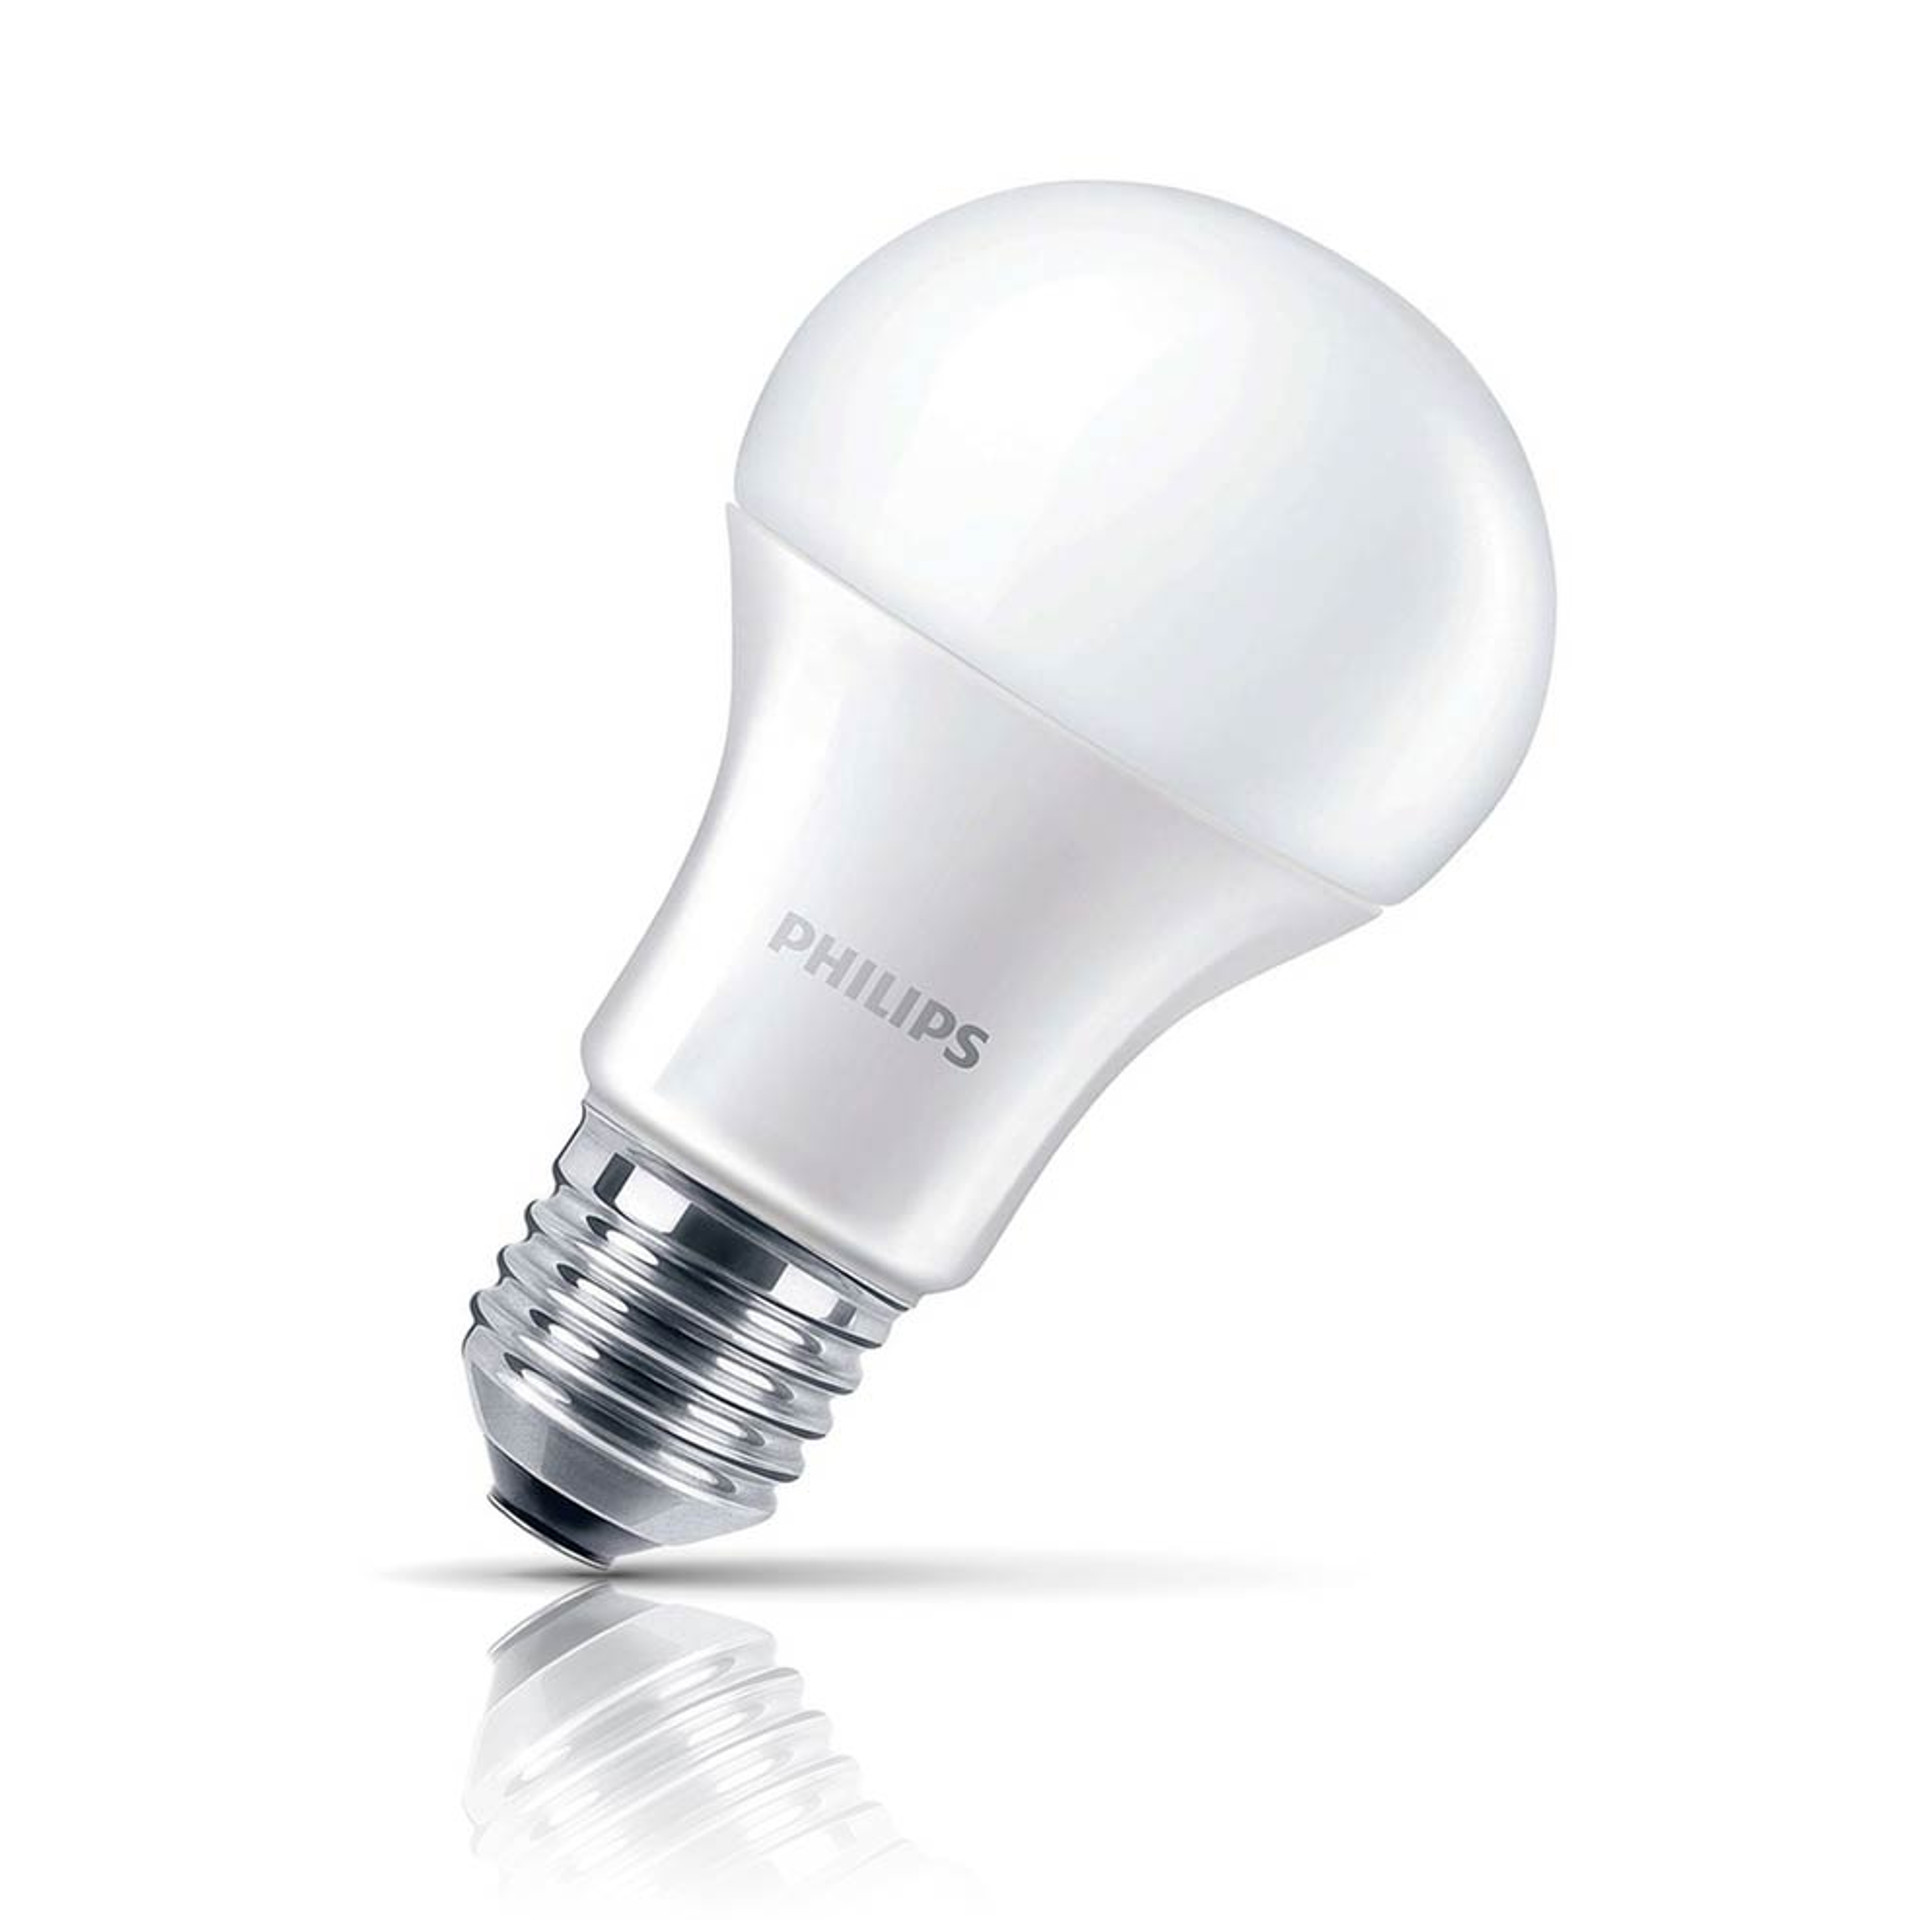 How are LED bulbs?